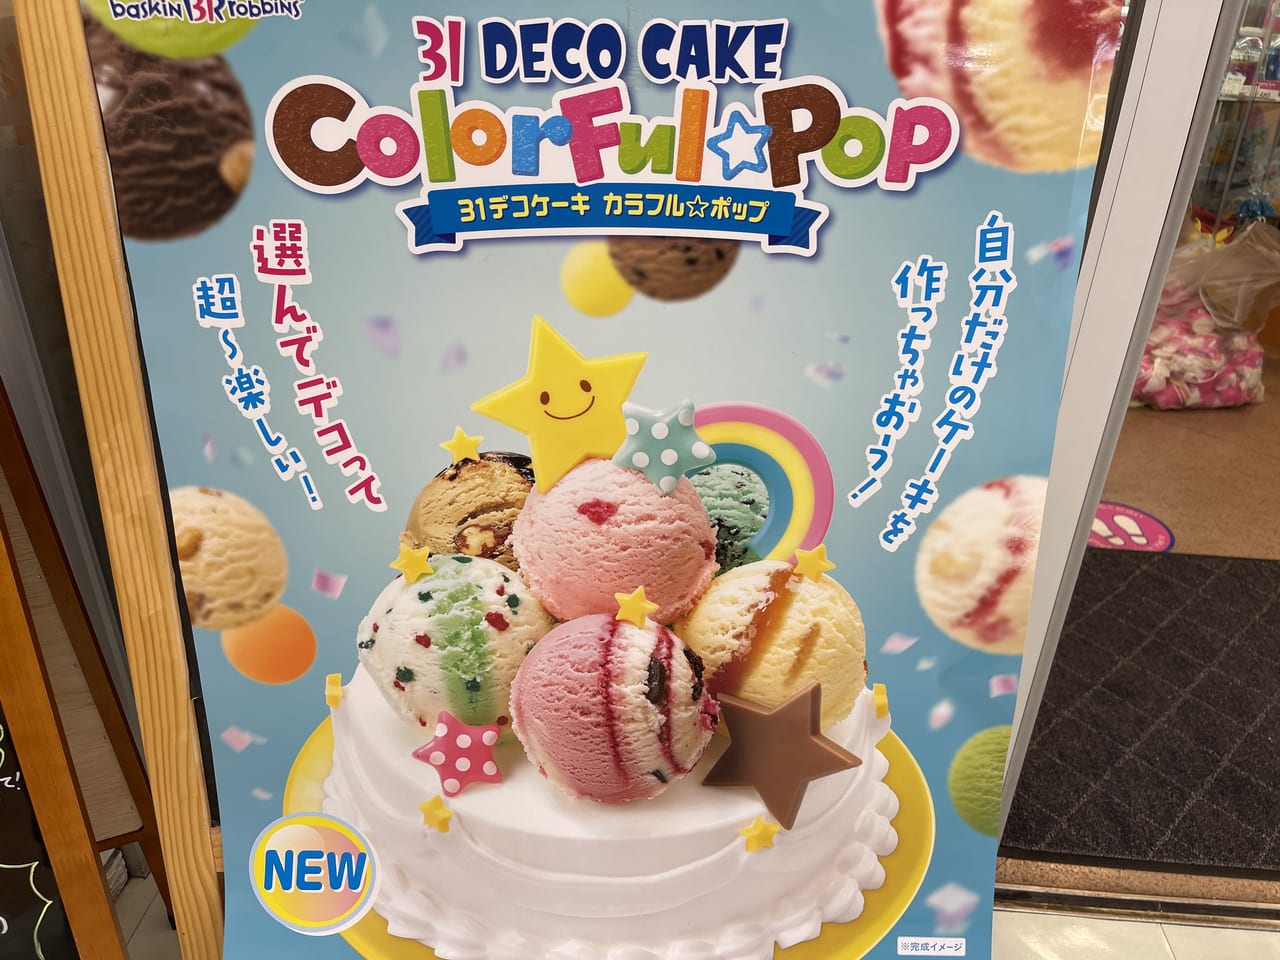 板橋区 サーティワンアイスクリームにデコケーキが新発売 バースデーケーキにもピッタリなアイスケーキ 号外net 板橋区